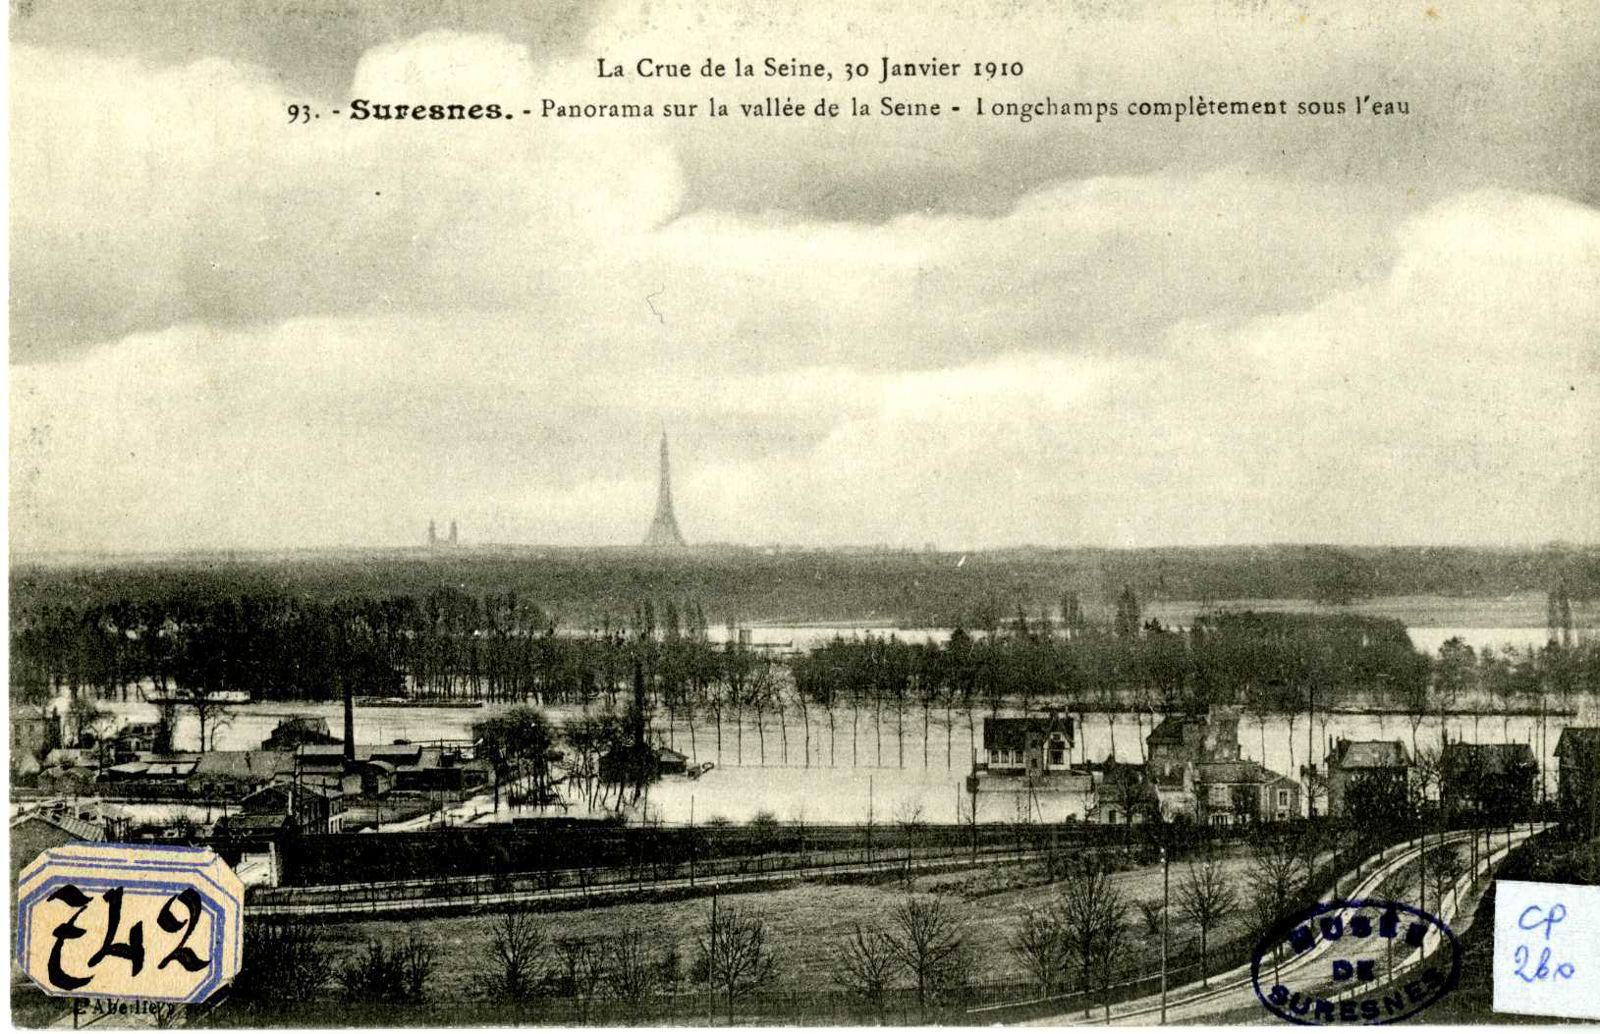 La crue de la Seine, 30 janvier 1910. Panorama sur la vallée de la Seine. Longchamps complètement sous l'eau